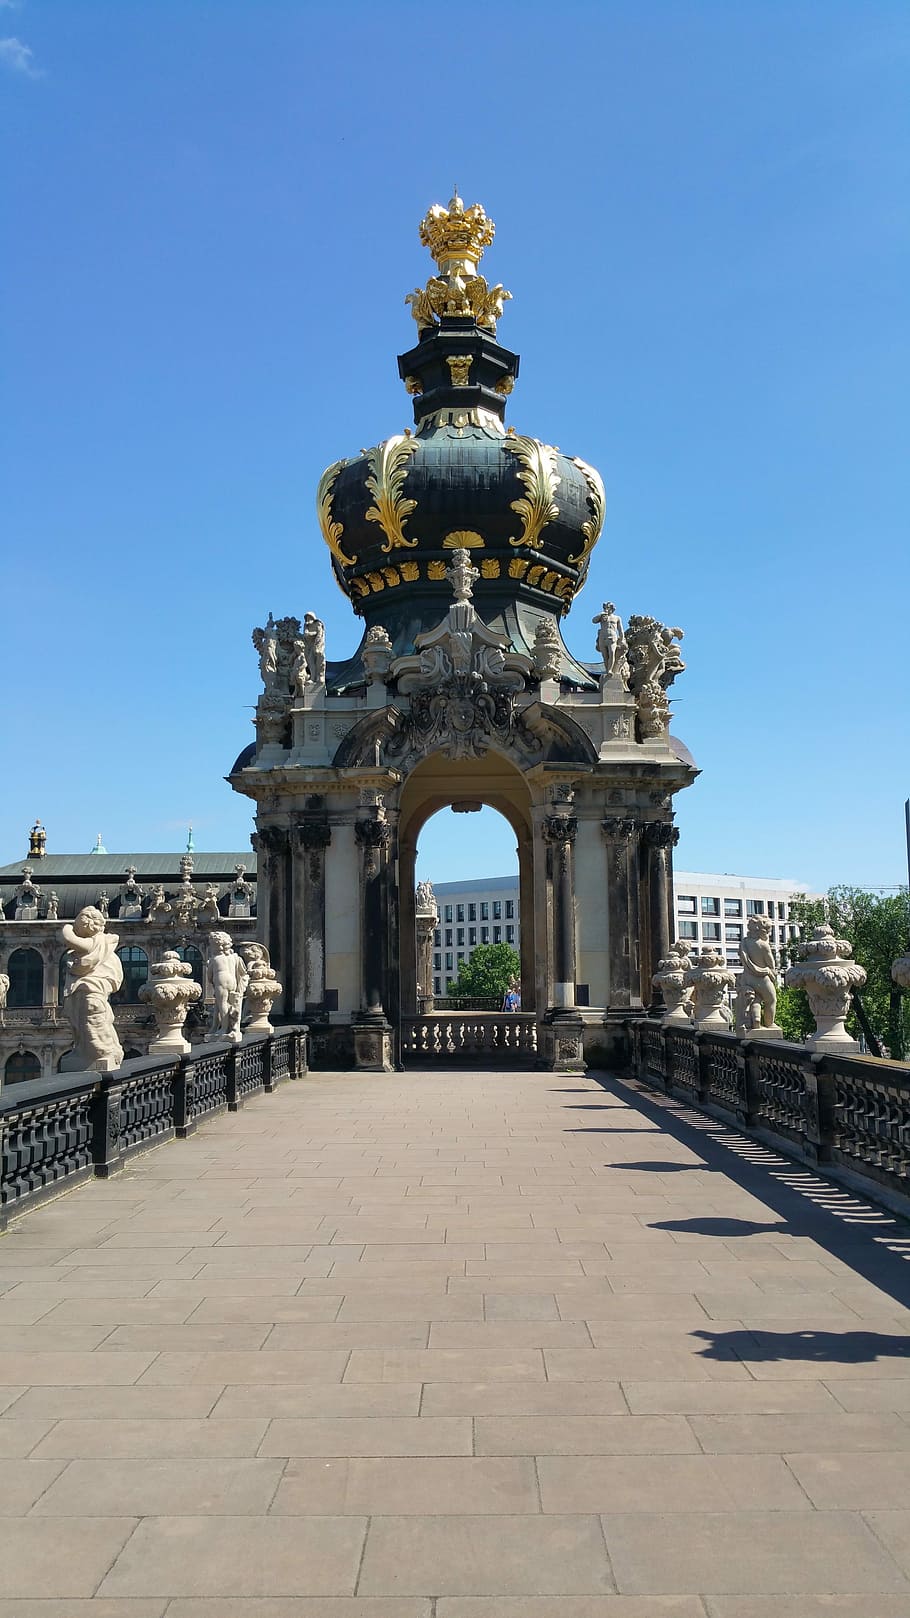 ツヴィンガー宮殿, ドレスデン, ドイツ, 宮殿, クロネントール, 建築, 有名な場所, 像, 歴史, 旅行先